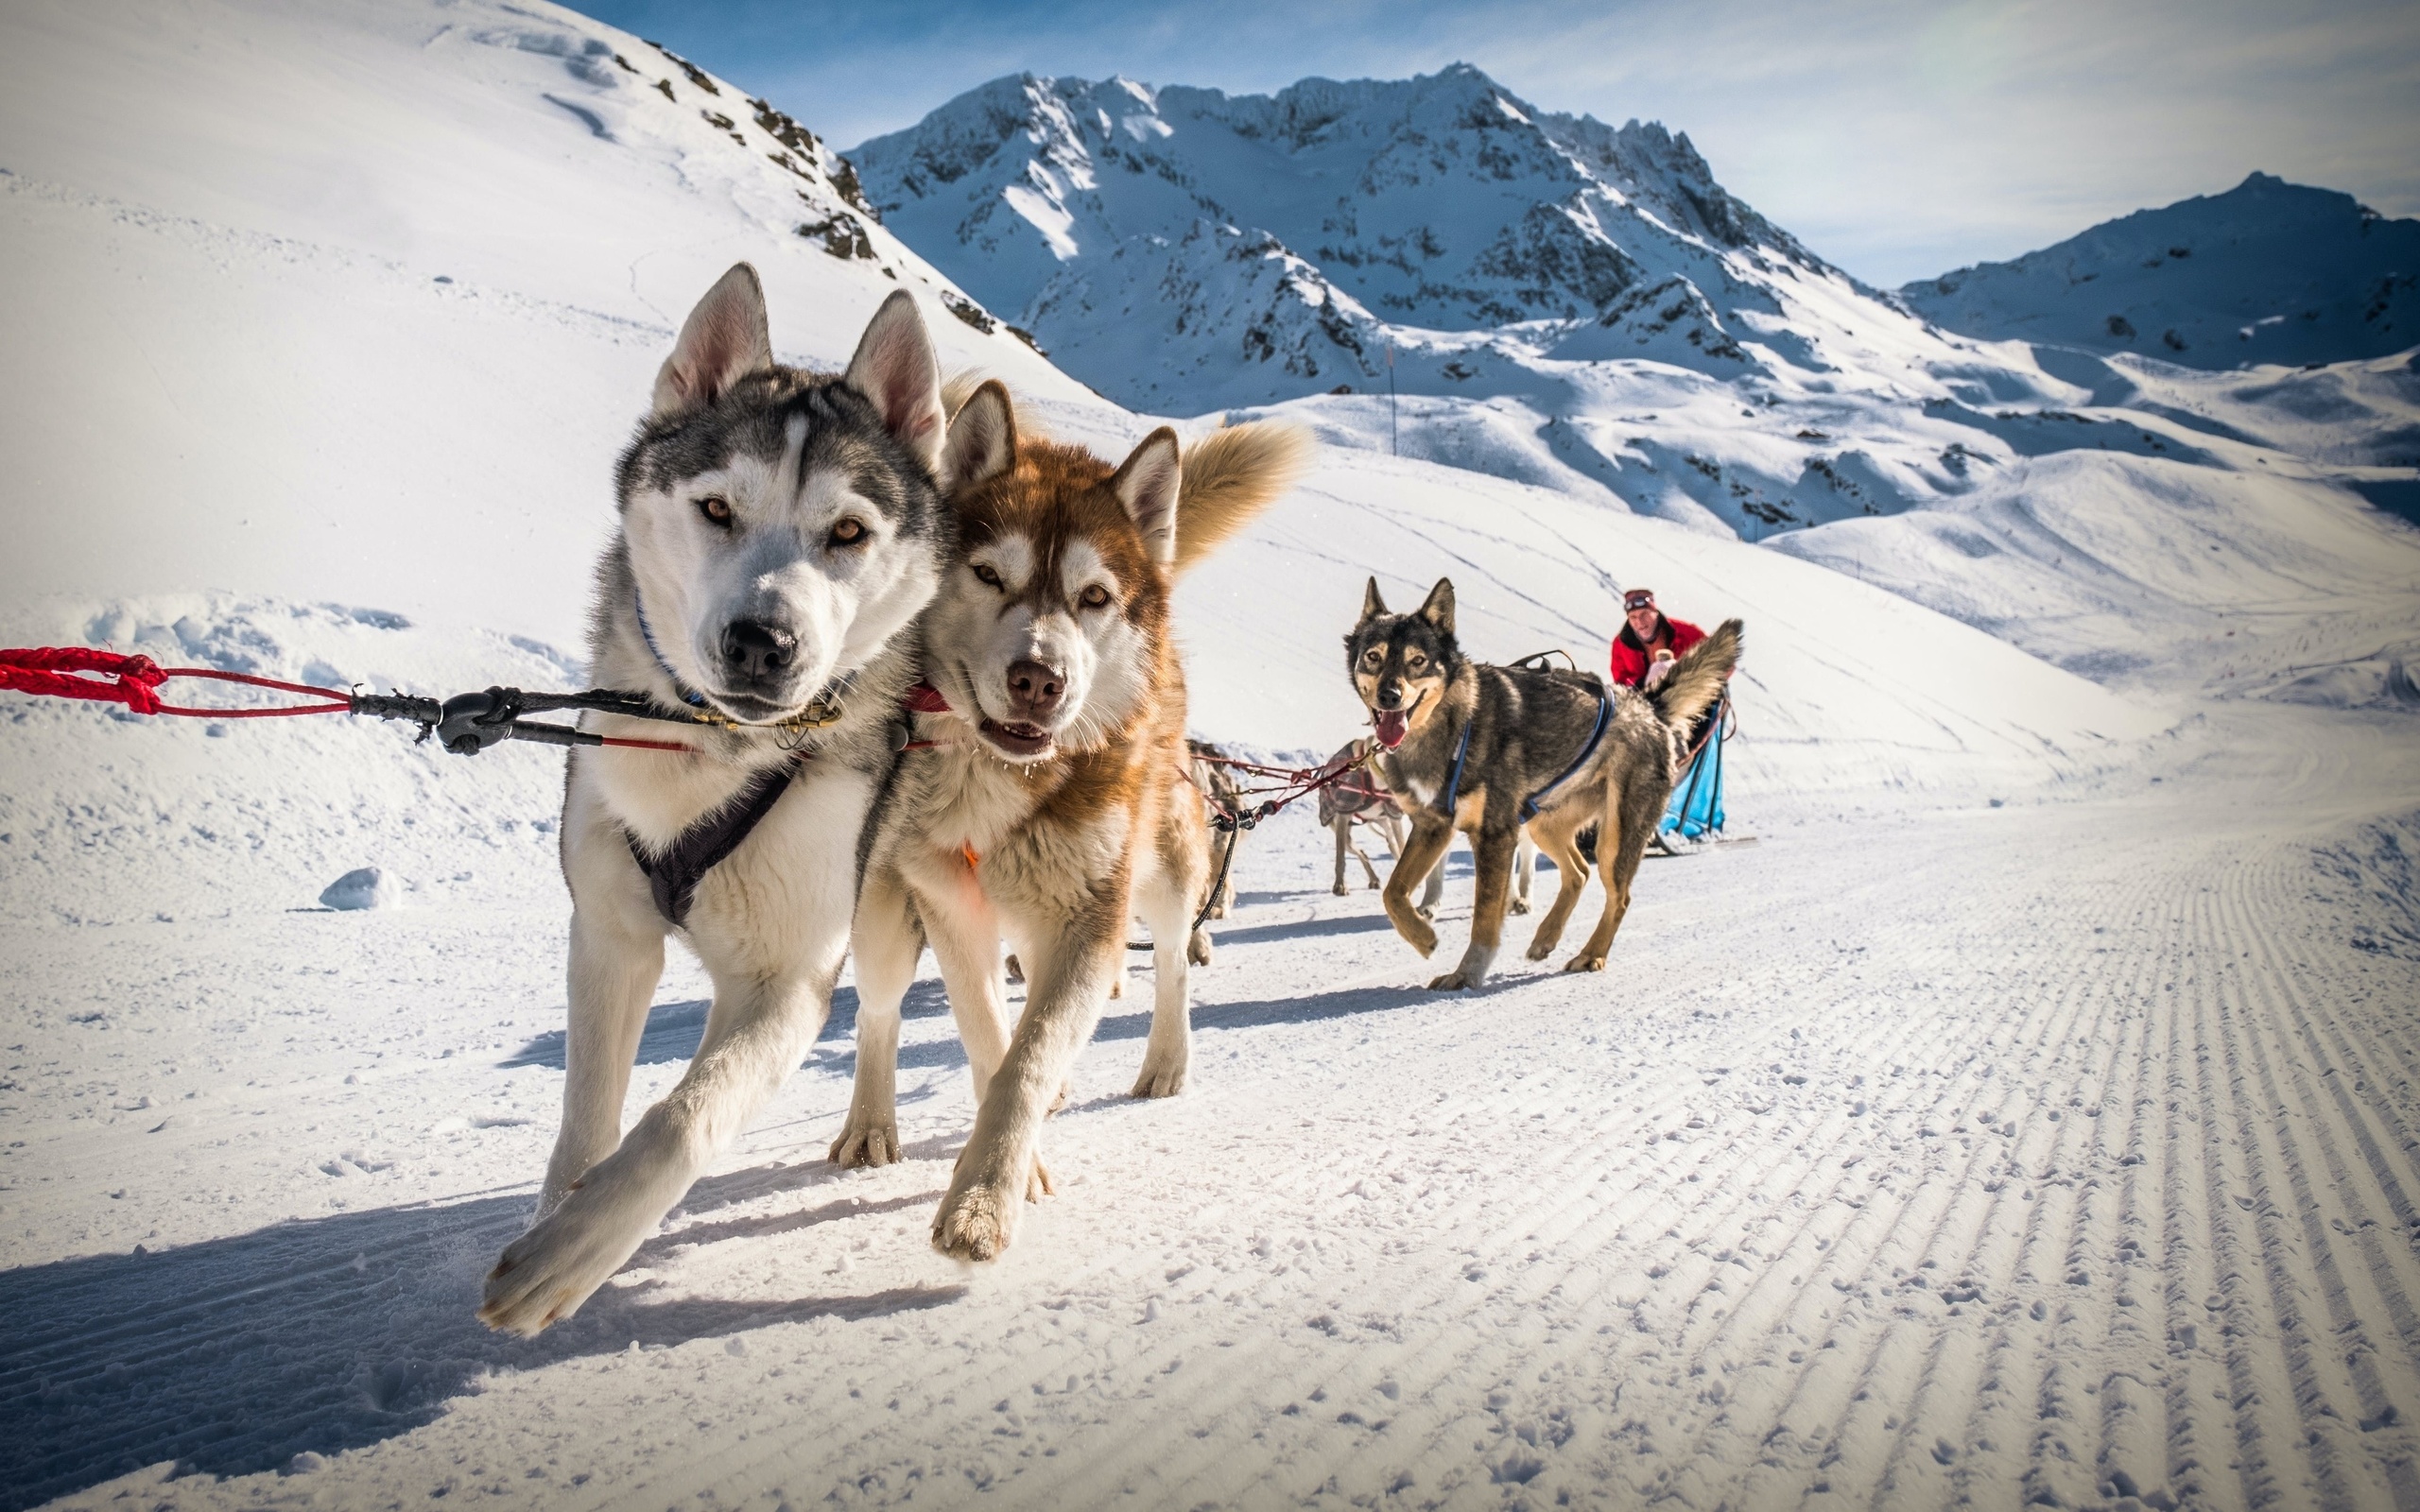 sled dogs, val thorens, france, alps, ski resort